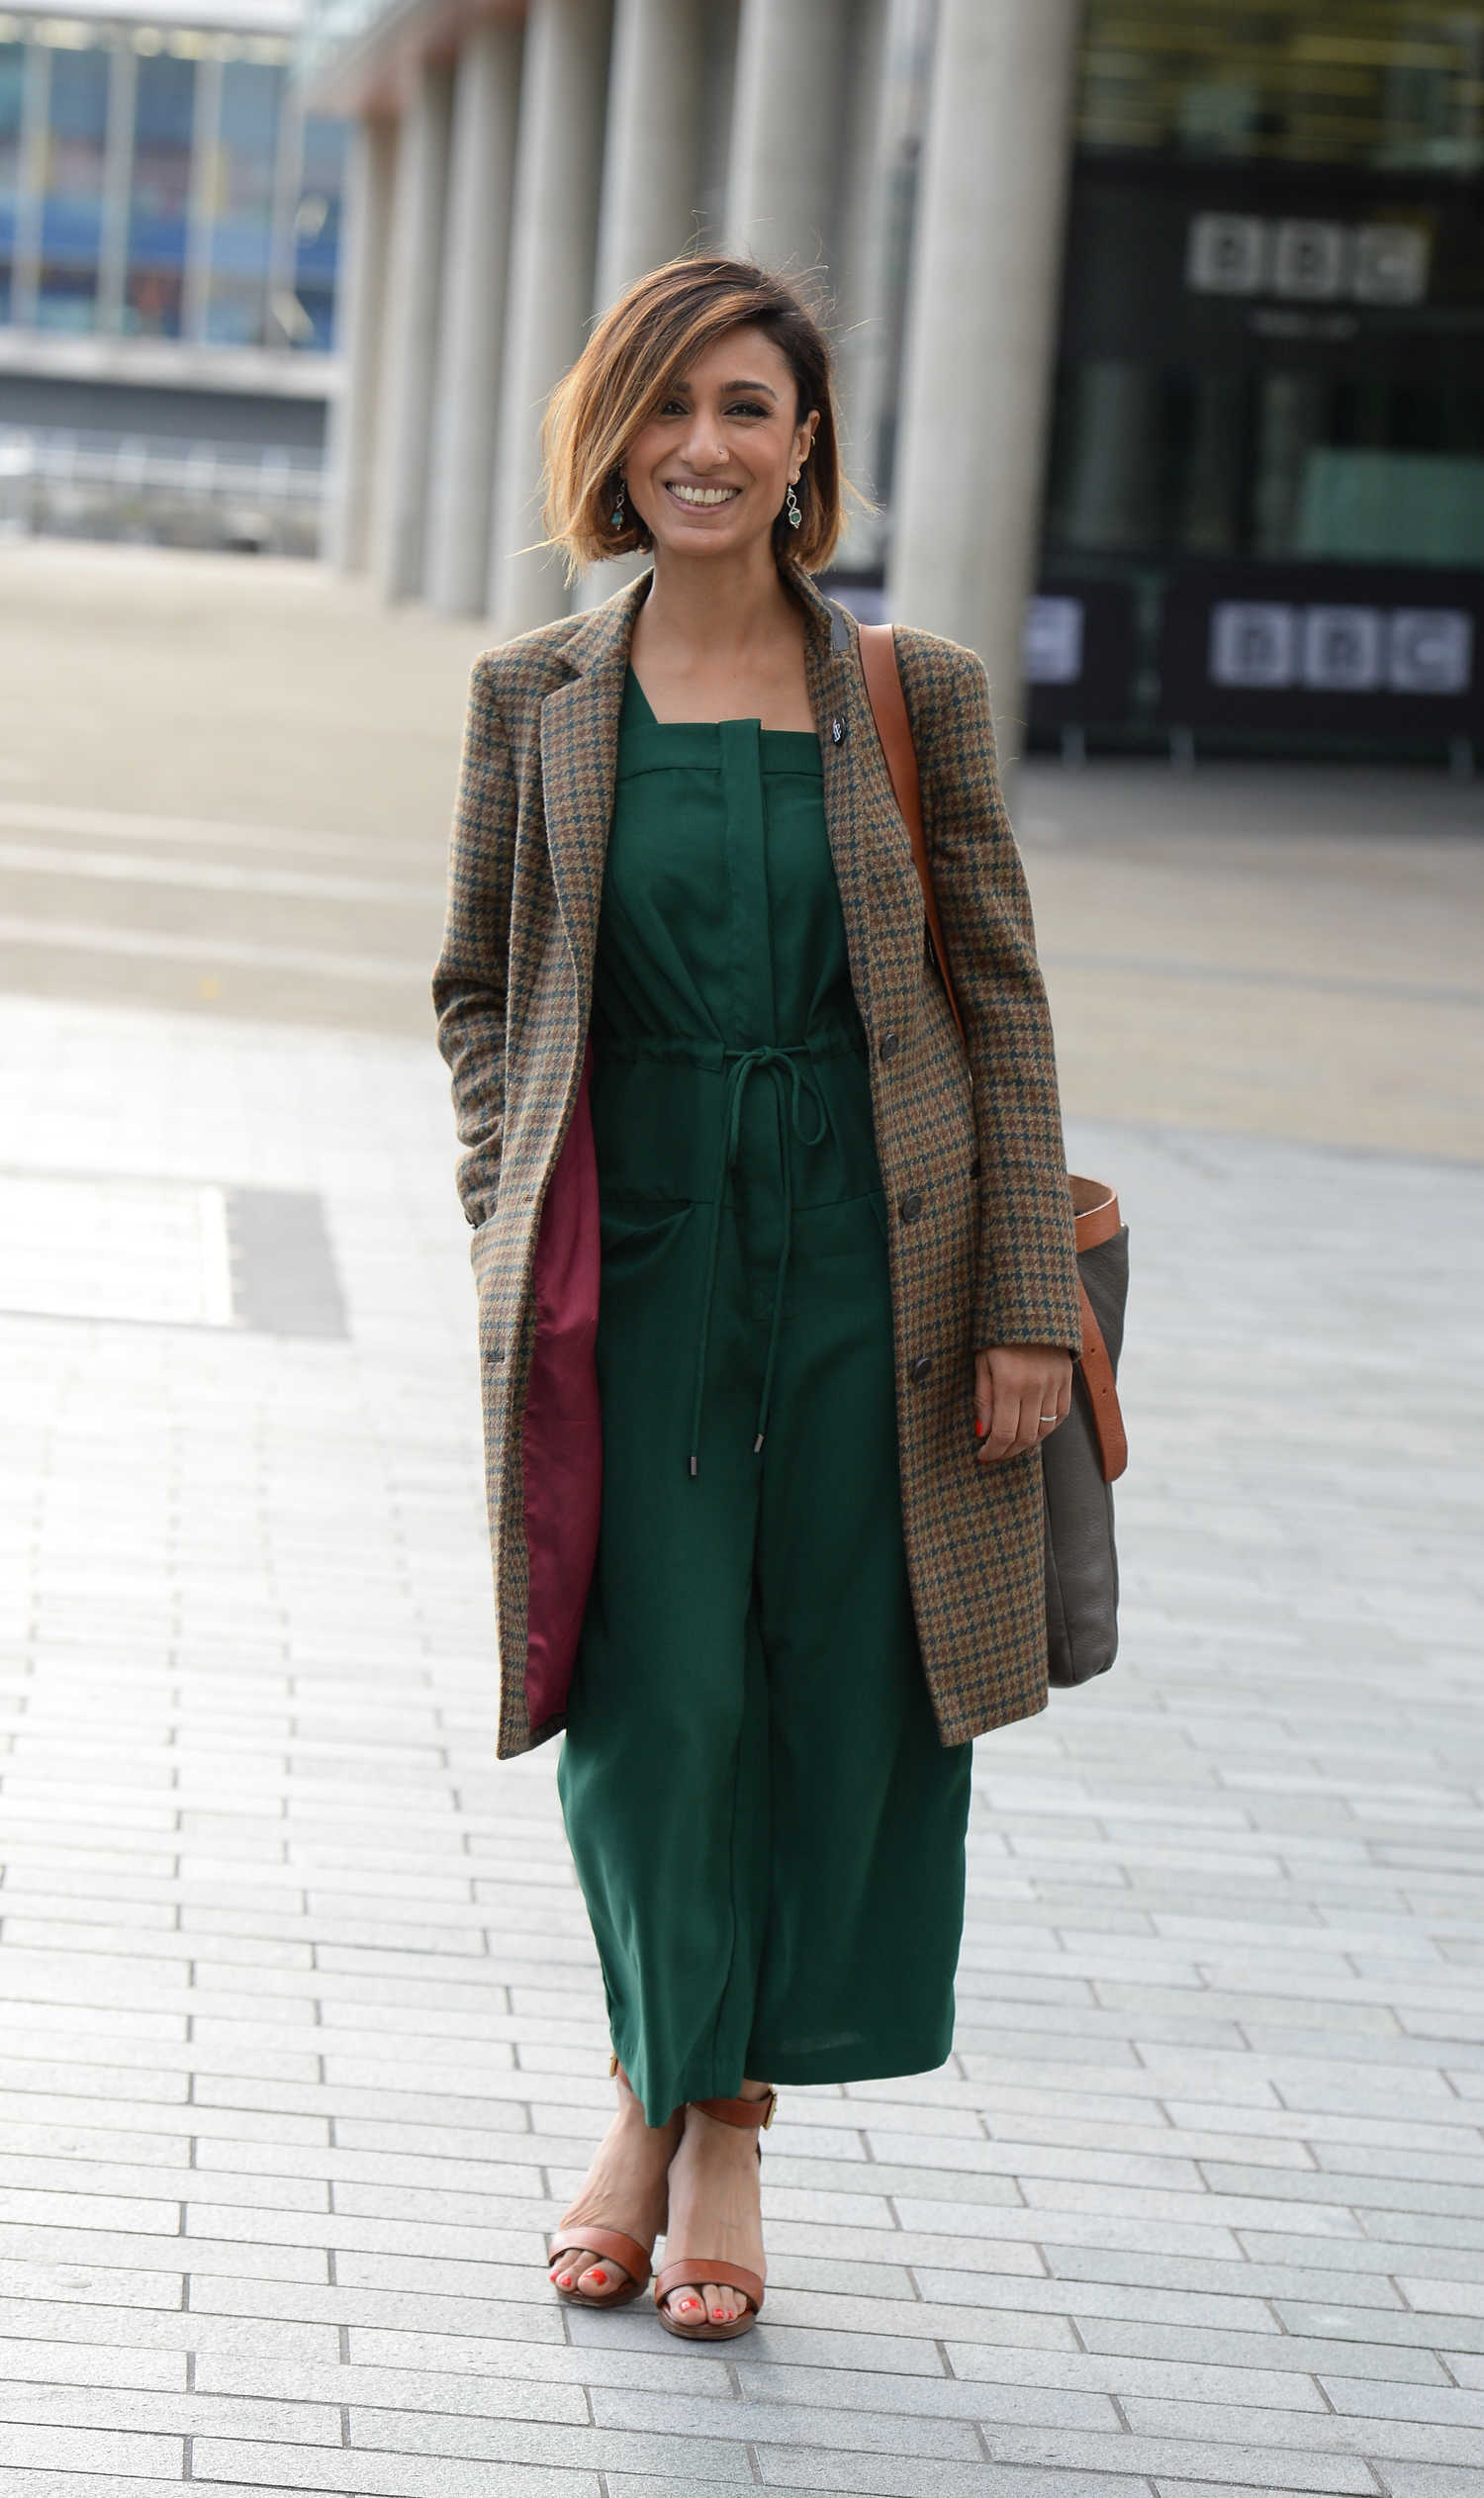 Anita Rani Leaves BBC Breakfast Studios in Manchester – Celeb Donut